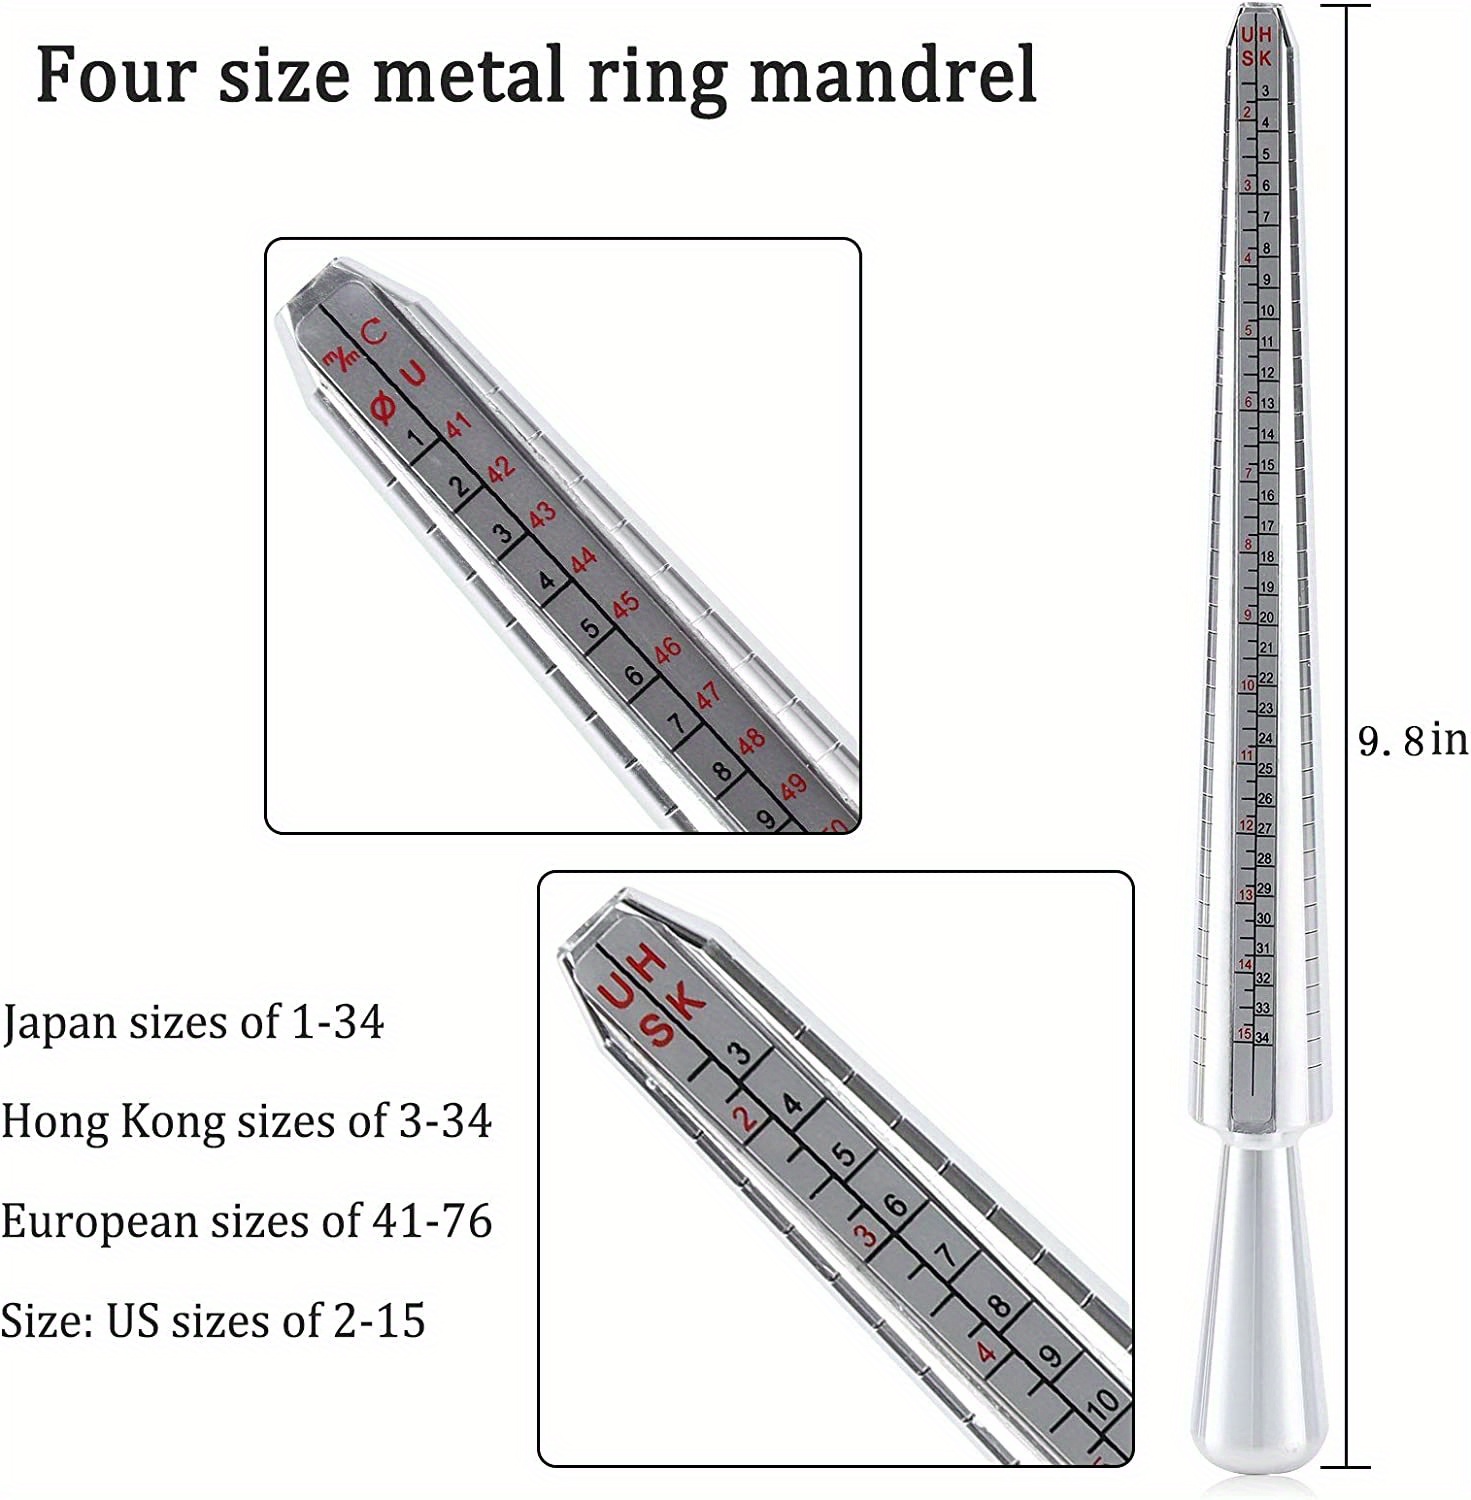 Ring Making Tool Kit. Rubber Hammer, Ring Sizer, Mandrek, Measuring Tool.